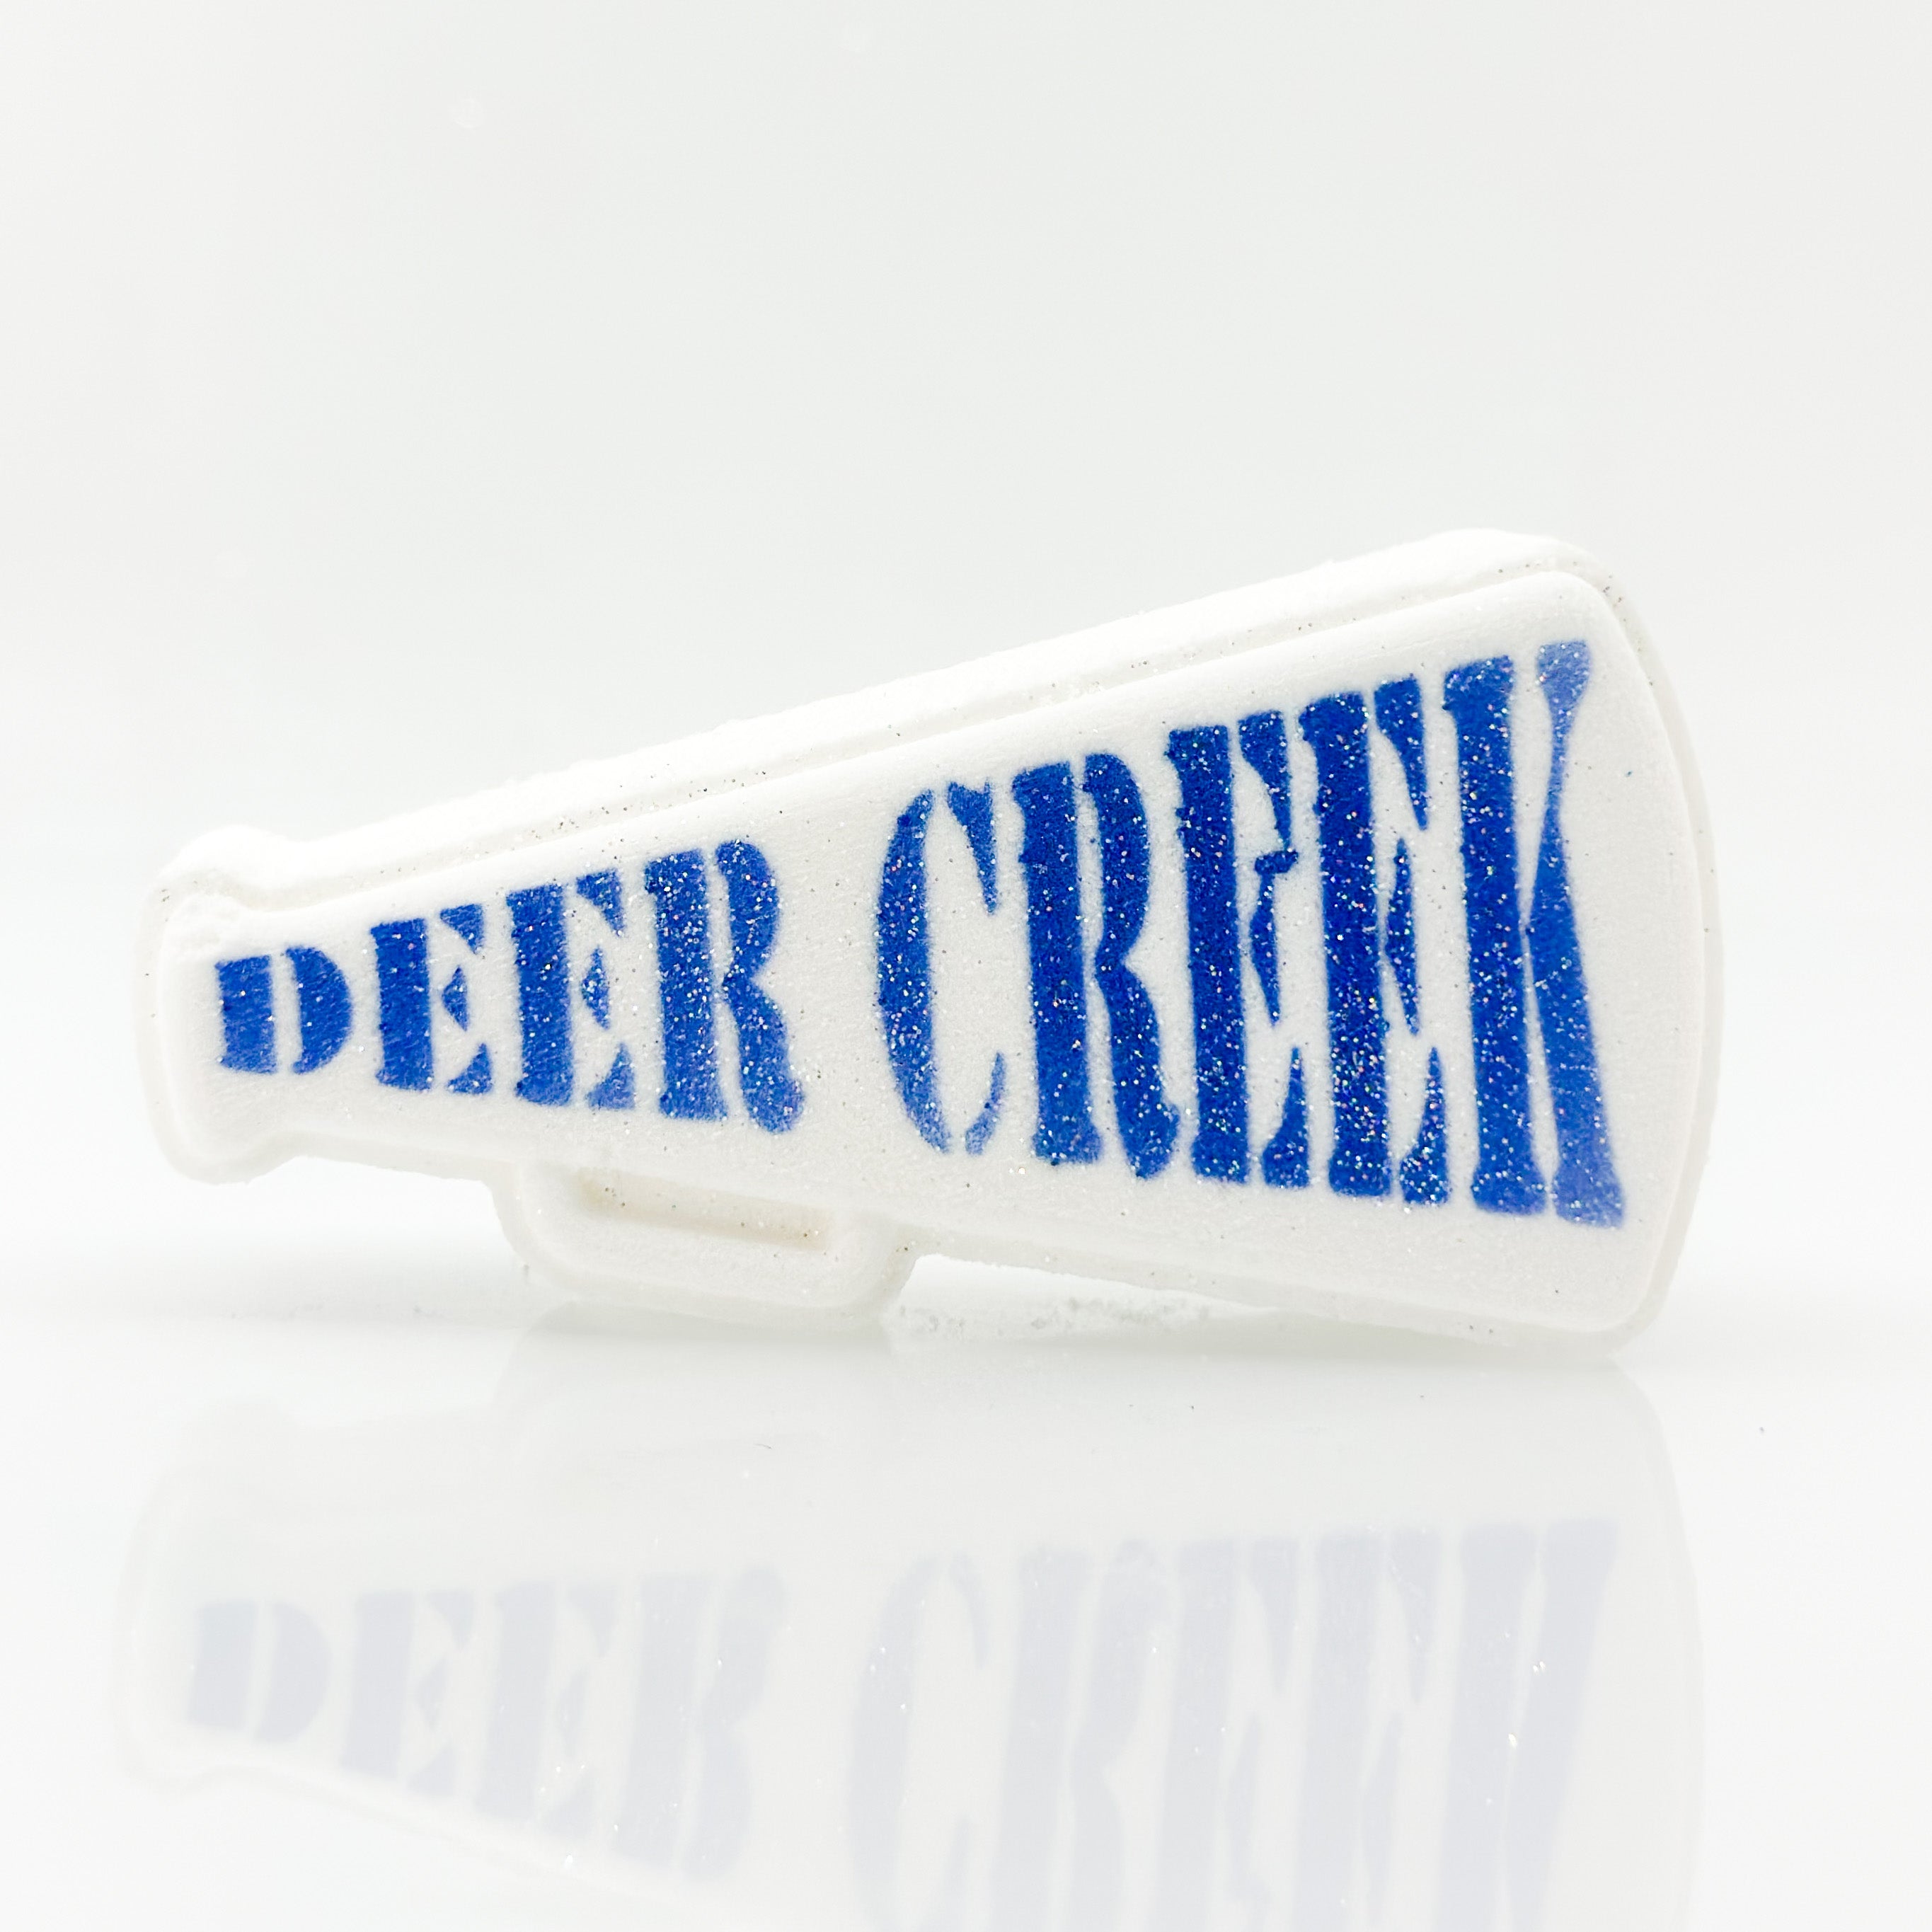 Deer Creek Bath Bomb